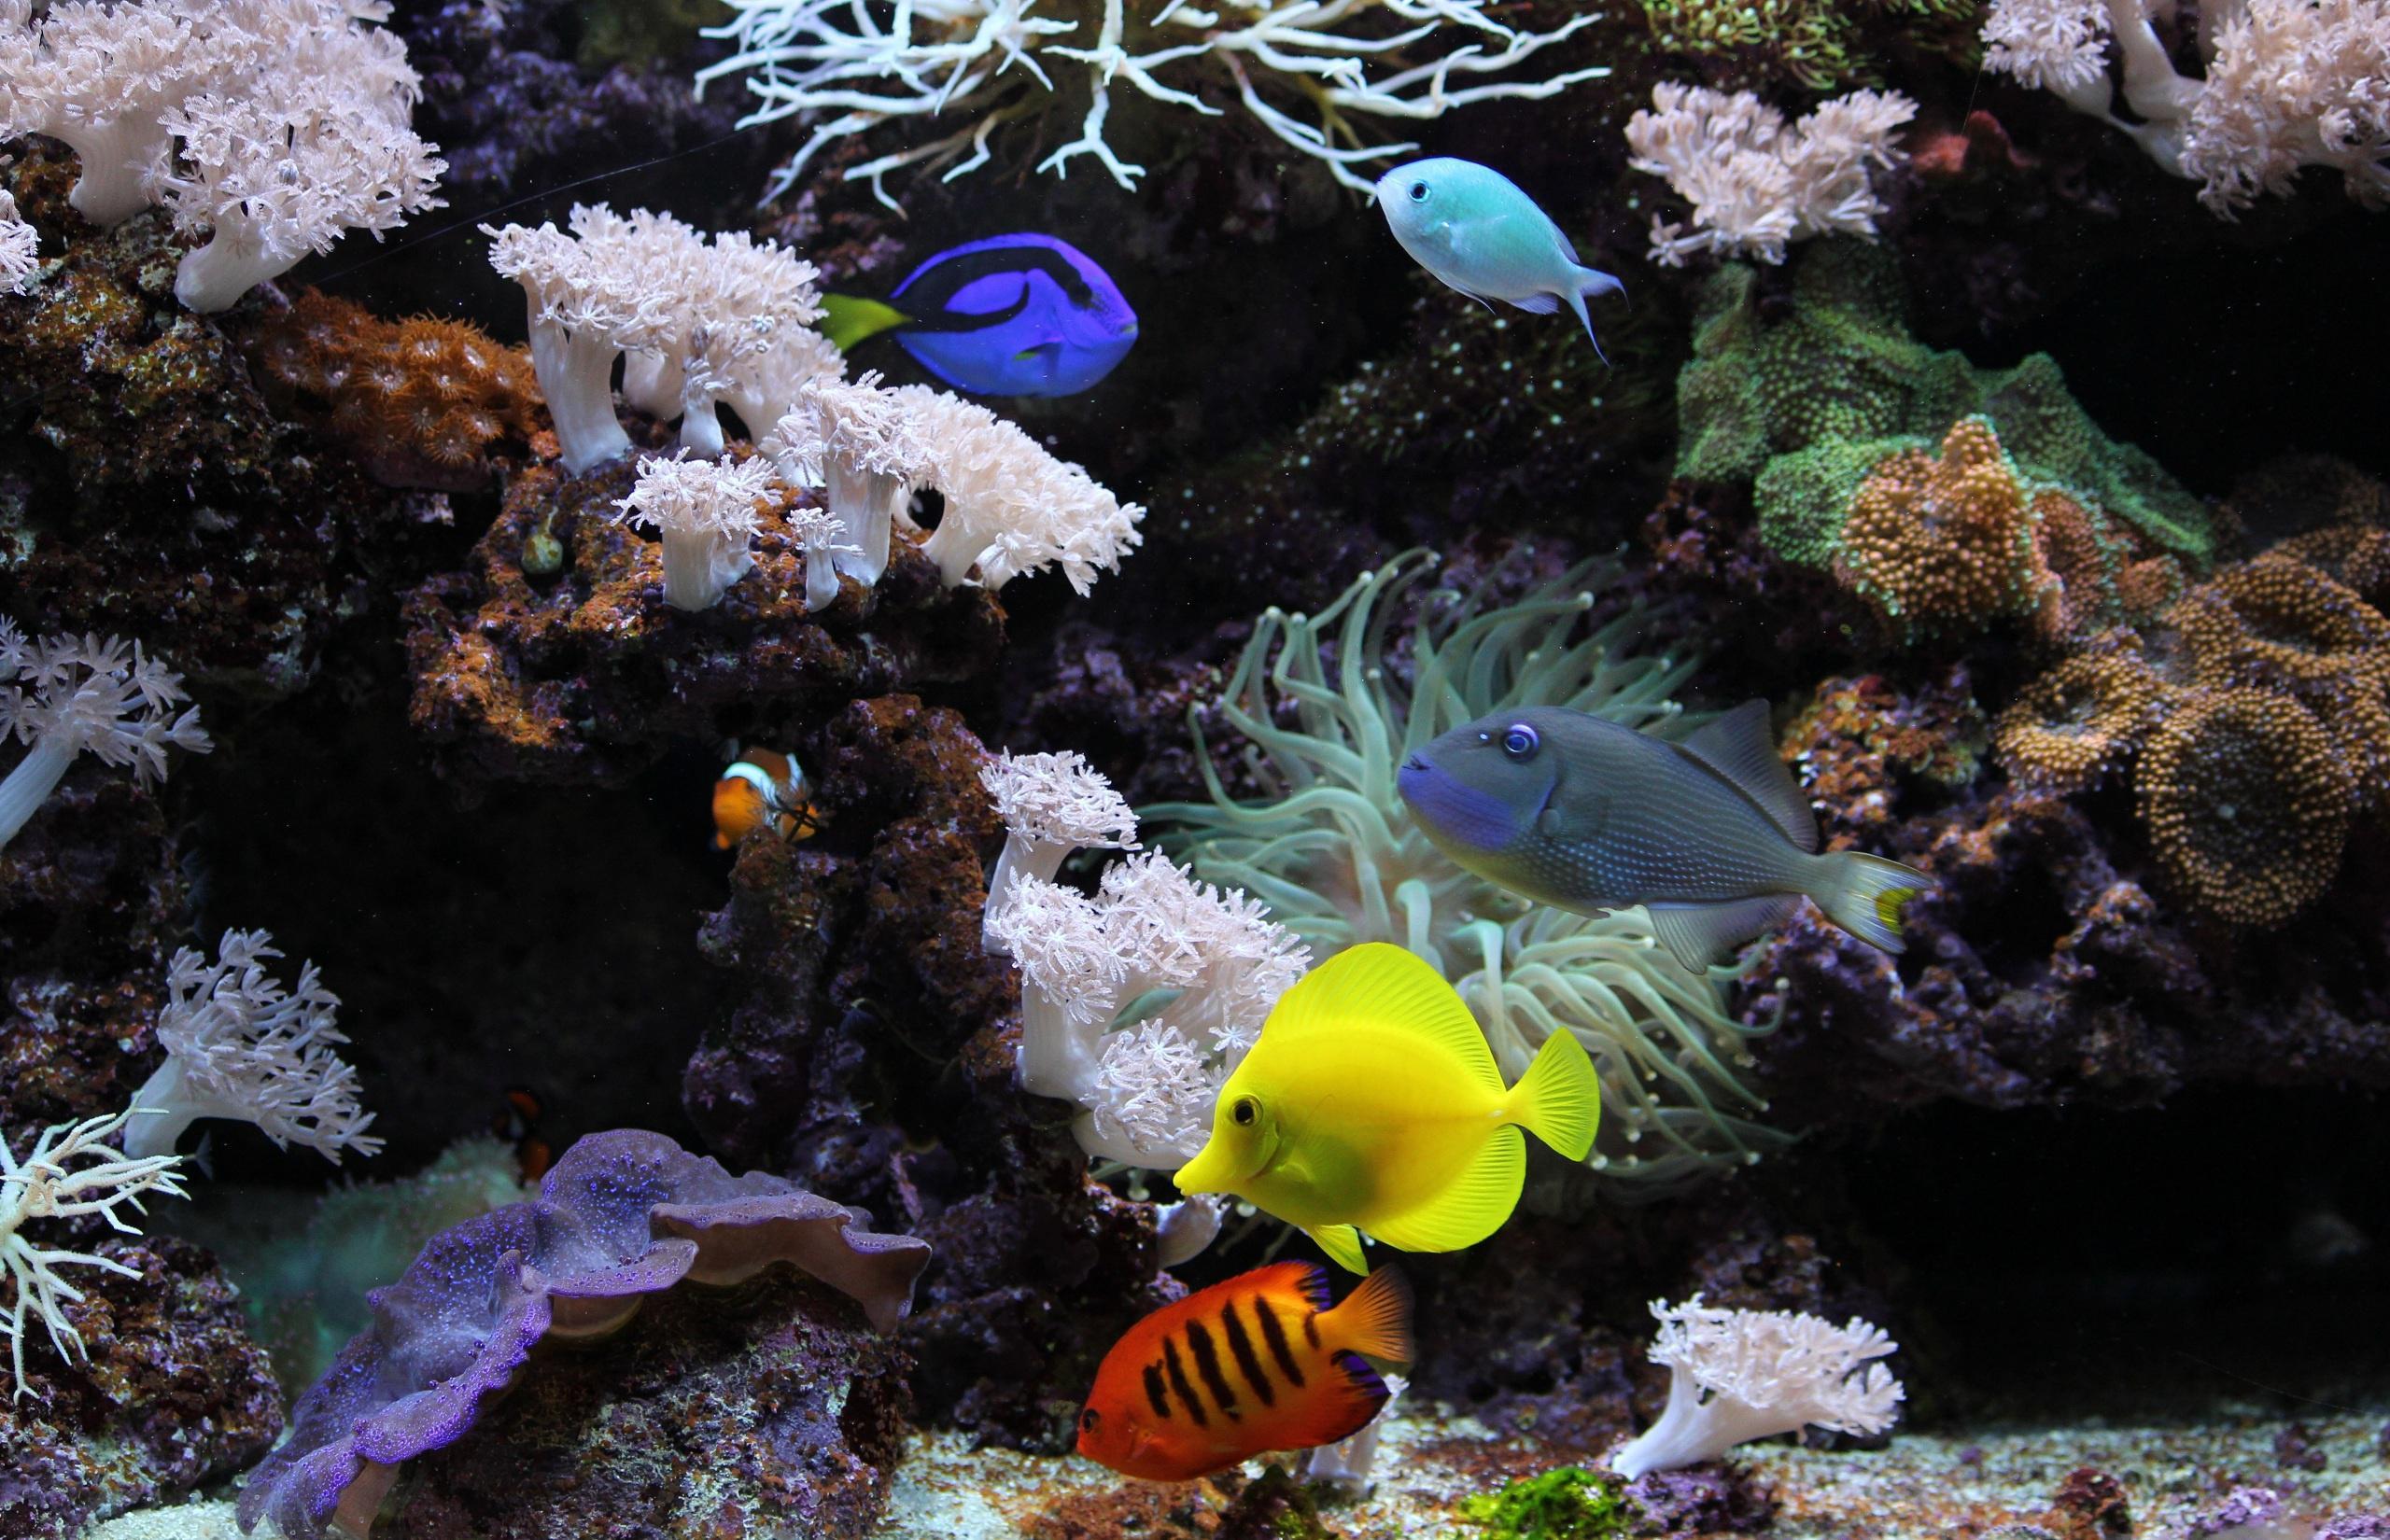 Подводный аквариум, экзотические рыбки, коралл, с высоким разрешением изображения, Underwater aquarium, exotic fish, coral, high-resolution images